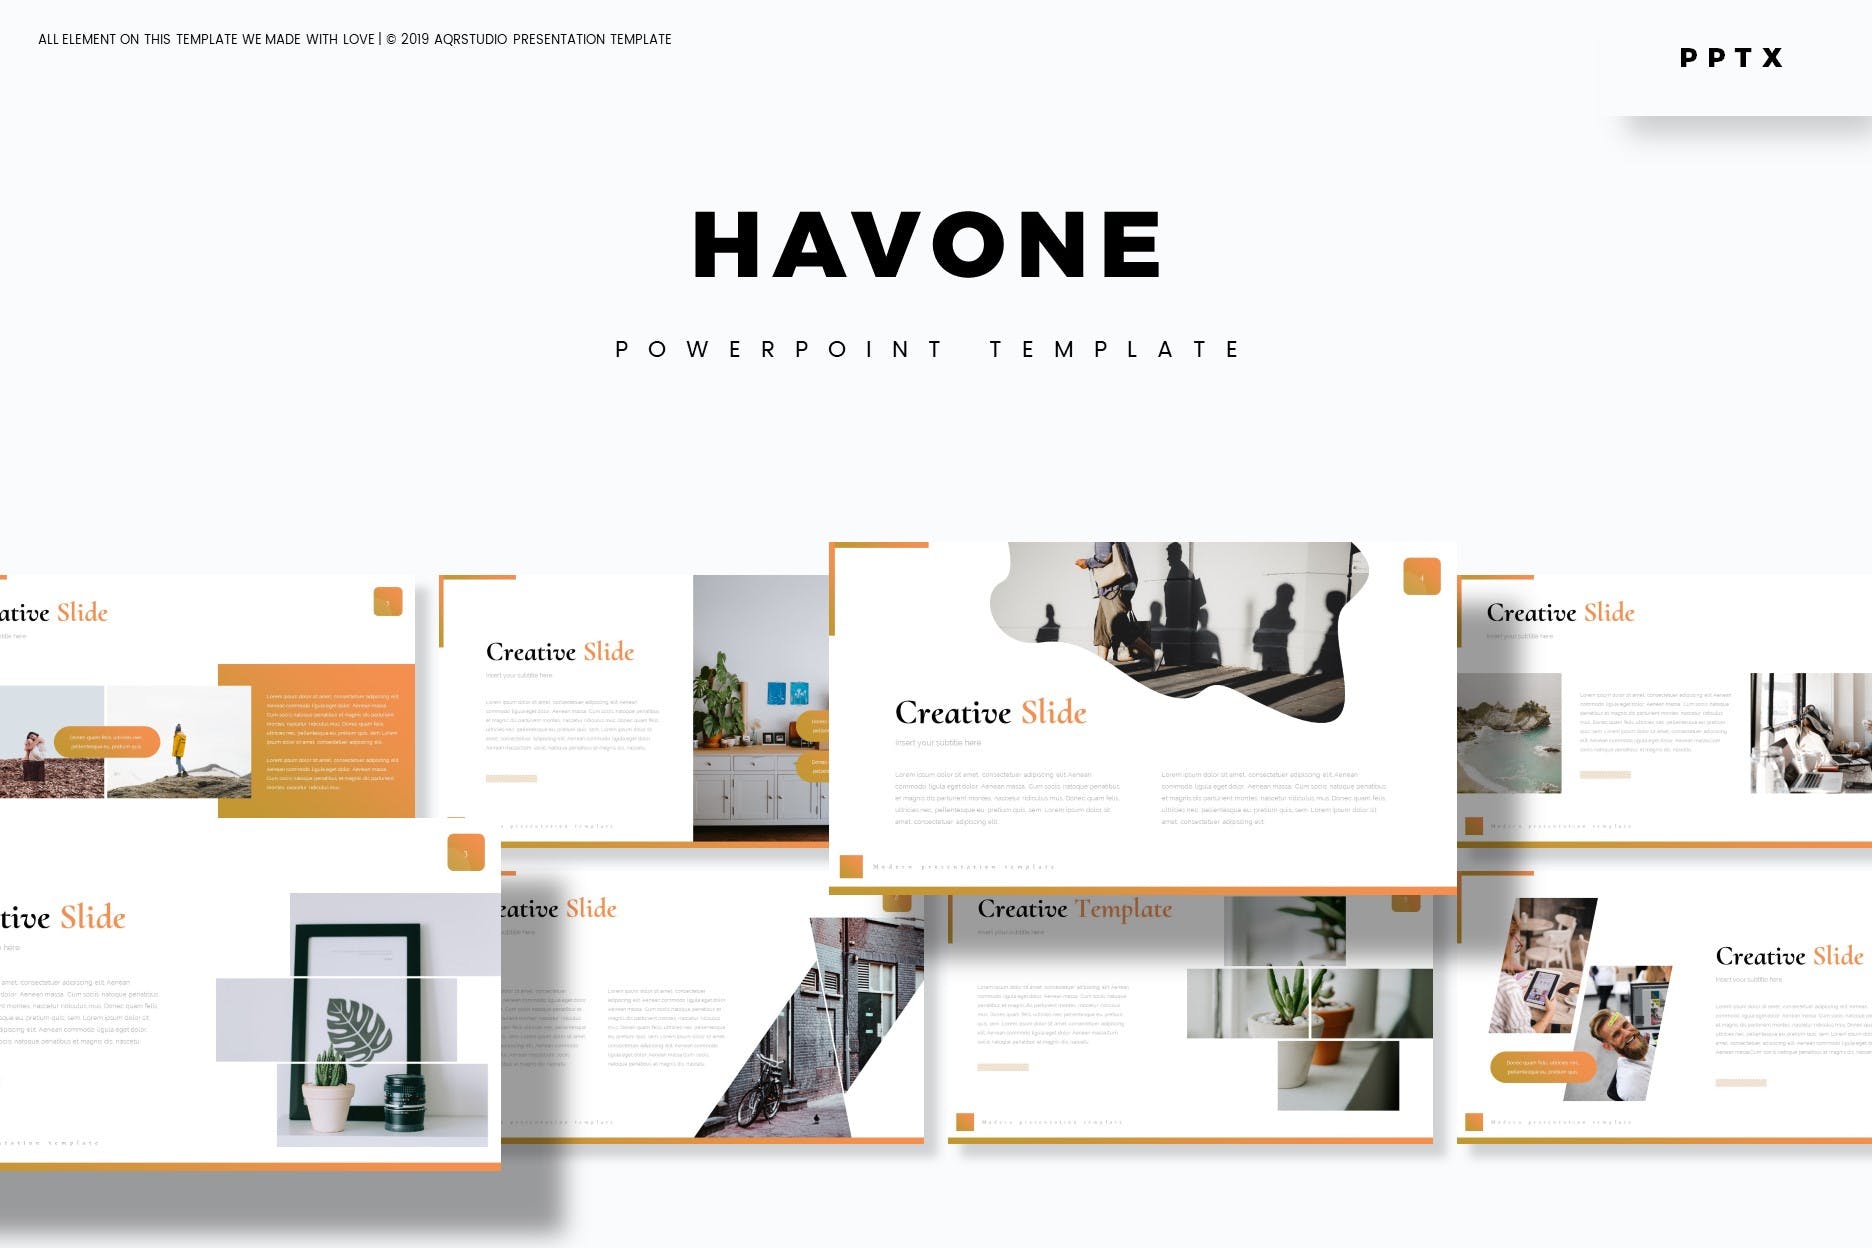 投标公司简介PPT幻灯片模板下载 Havone – Powerpoint Template插图